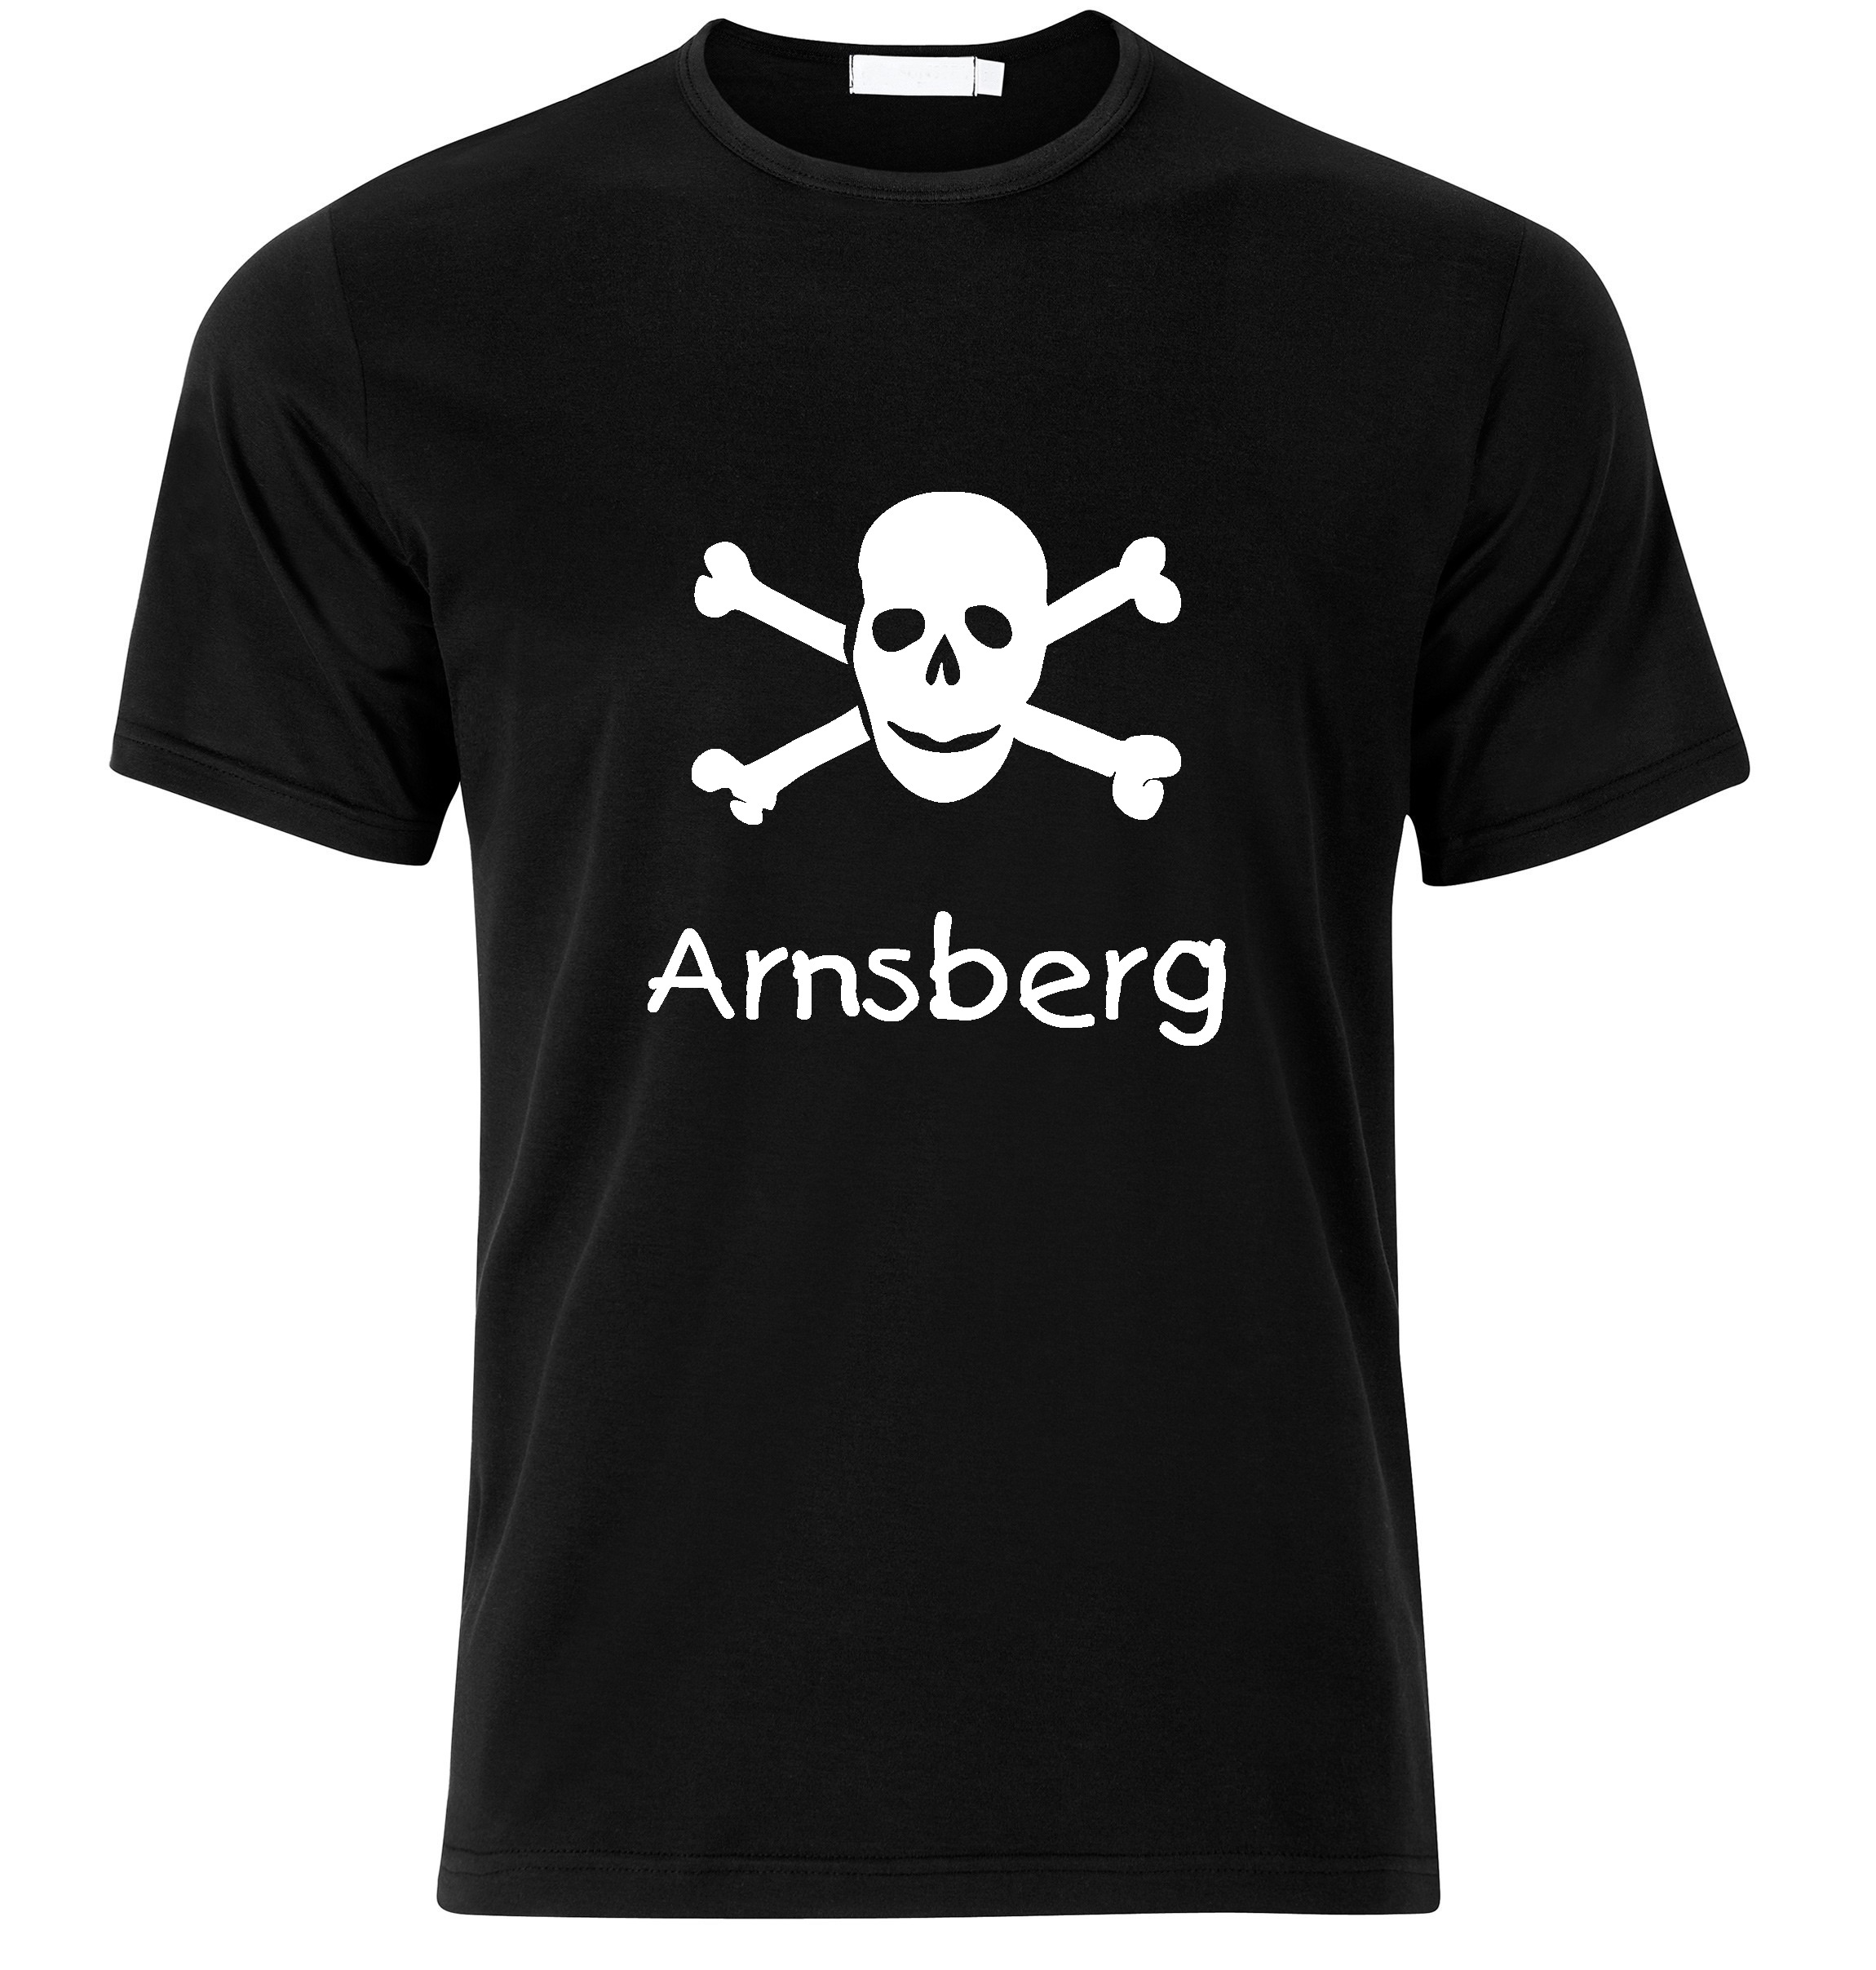 T-Shirt Arnsberg Jolly Roger, Totenkopf